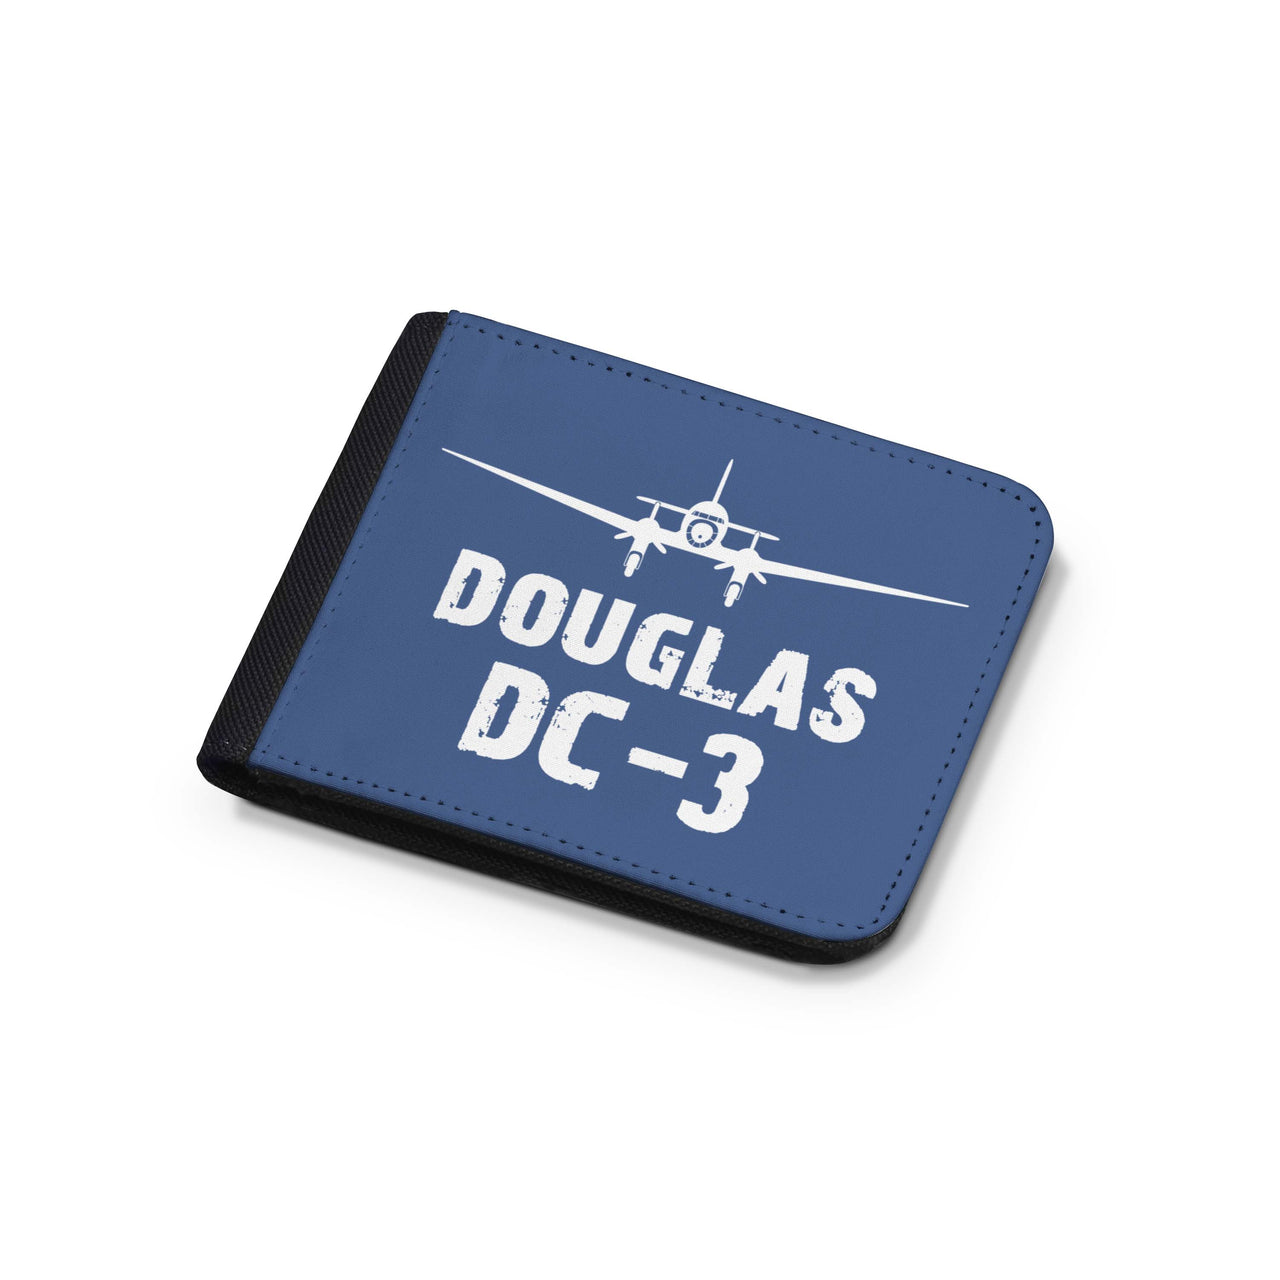 Douglas DC-3 & Plane Designed Wallets